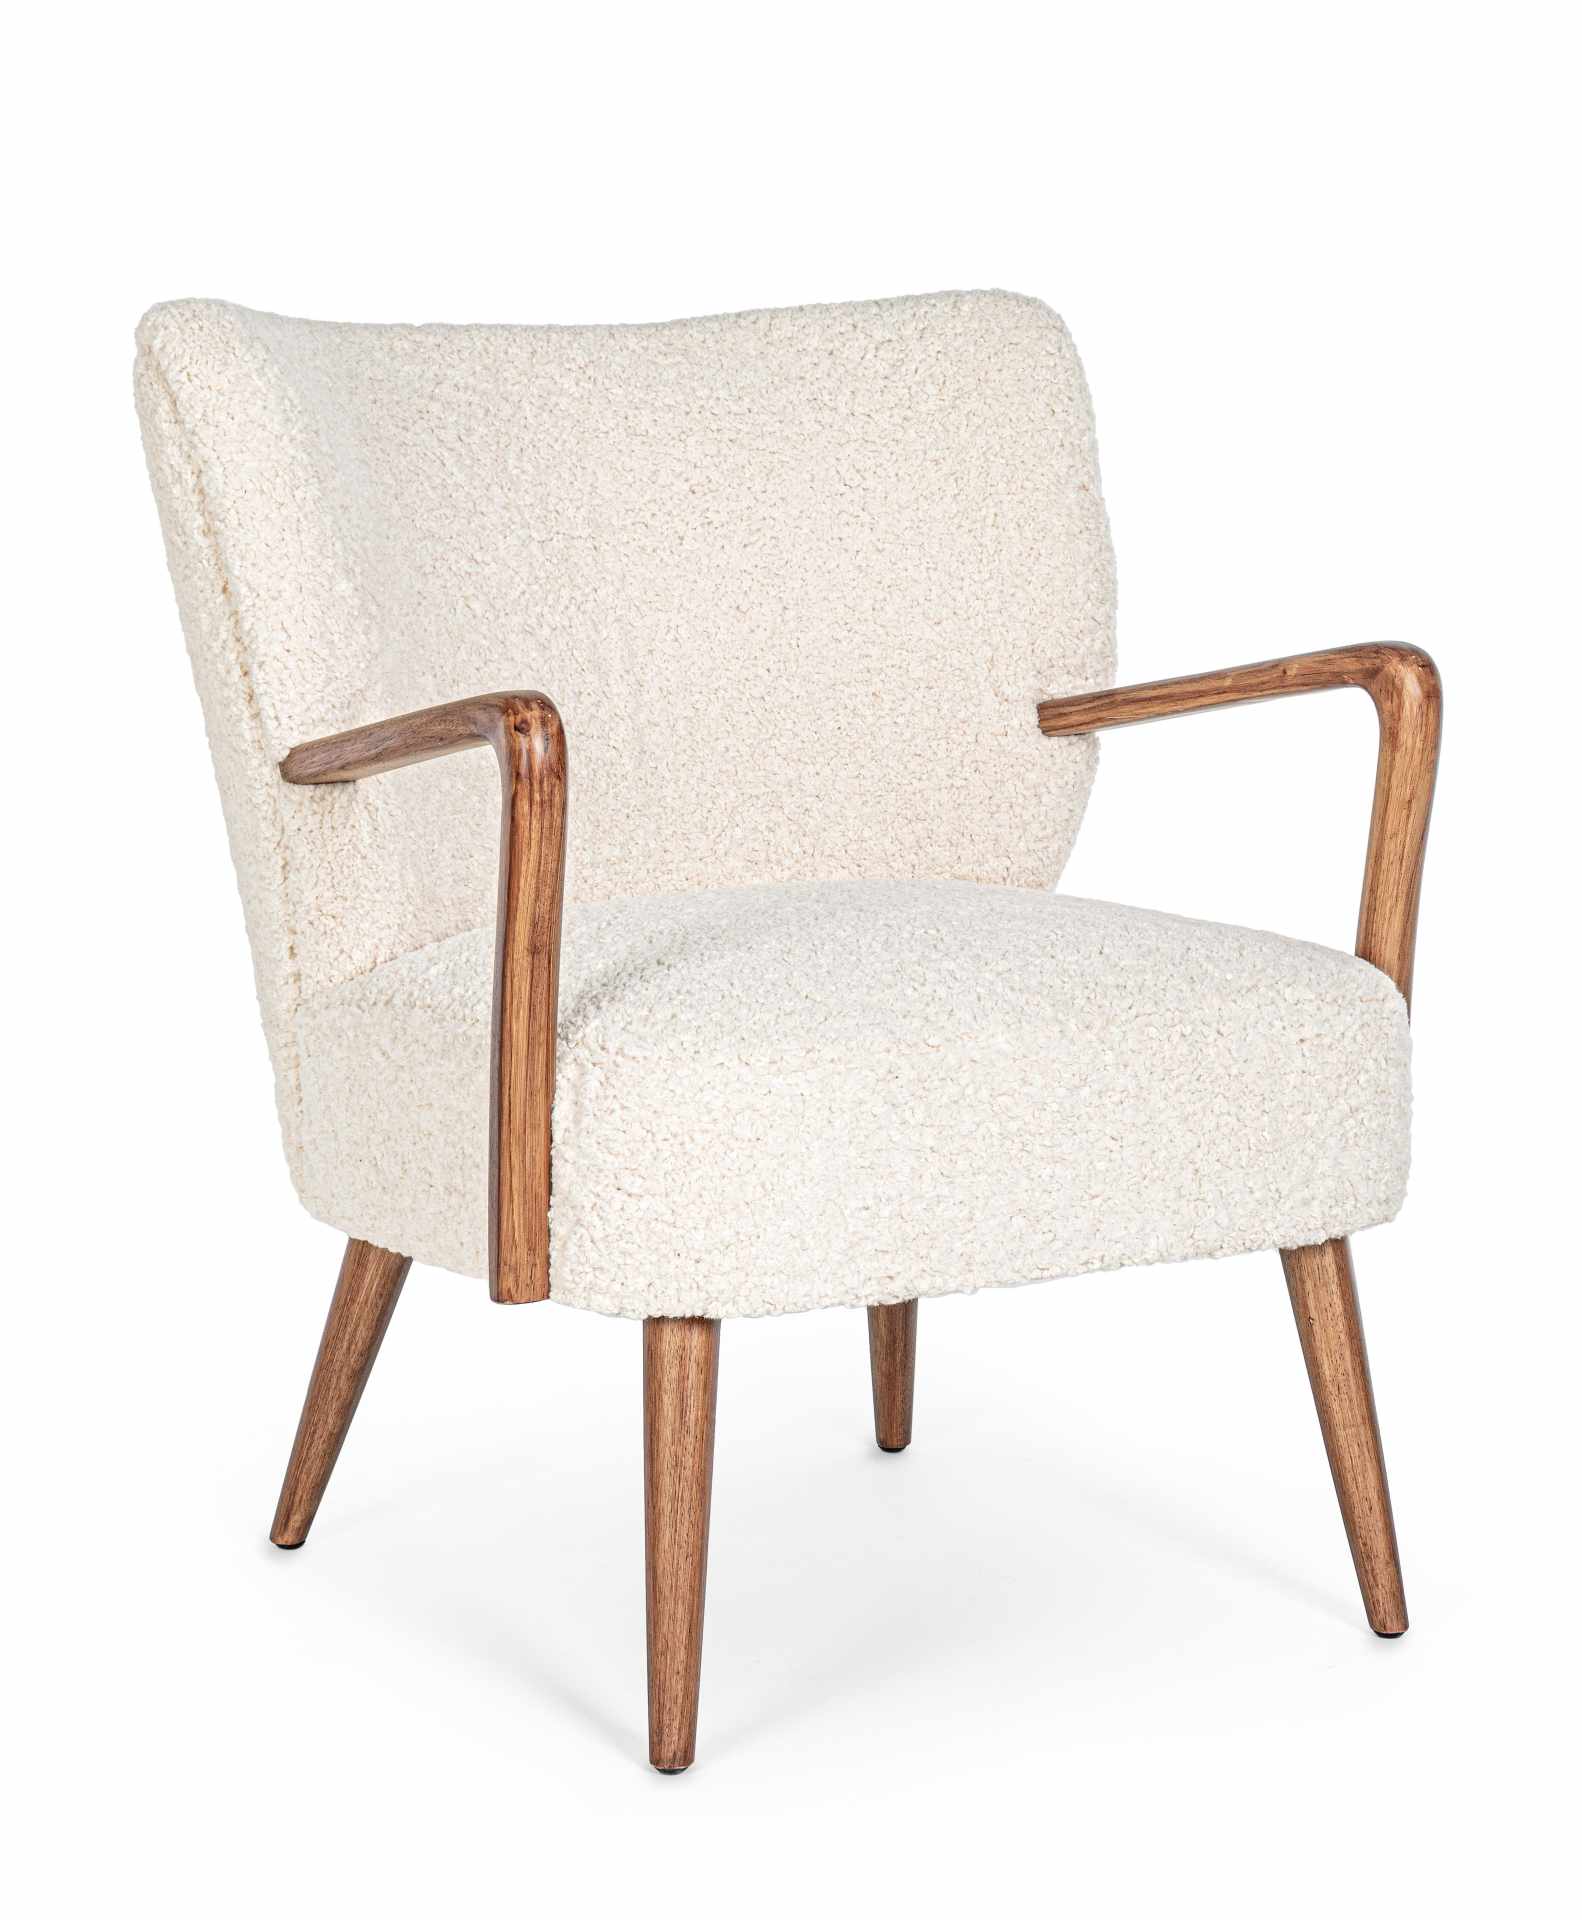 Der Sessel Moritz überzeugt mit seinem modernen Design. Gefertigt wurde er aus Stoff in Teddy-Optik, welcher einen weißen Farbton besitzt. Das Gestell ist aus Kautschukholz und hat eine natürliche Farbe. Der Sessel besitzt eine Sitzhöhe von 45 cm. Die Bre